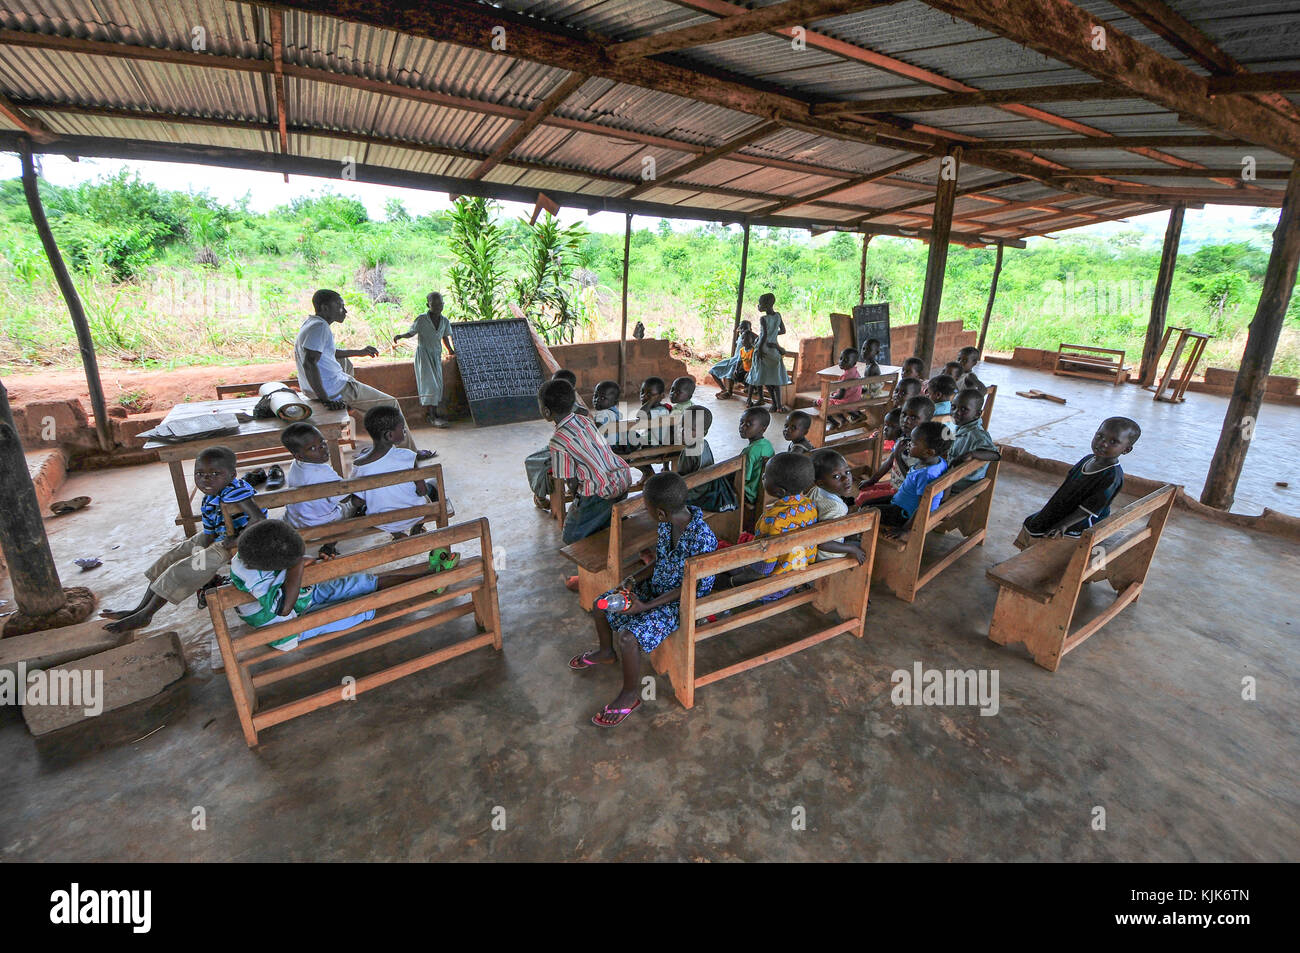 Asiafo amanfro, de l'Est, le Ghana - Novembre 14 : les étudiants qui fréquentent une classe en plein air dans la salle de classe de l'école élémentaire yilo krobo district près de accr Banque D'Images